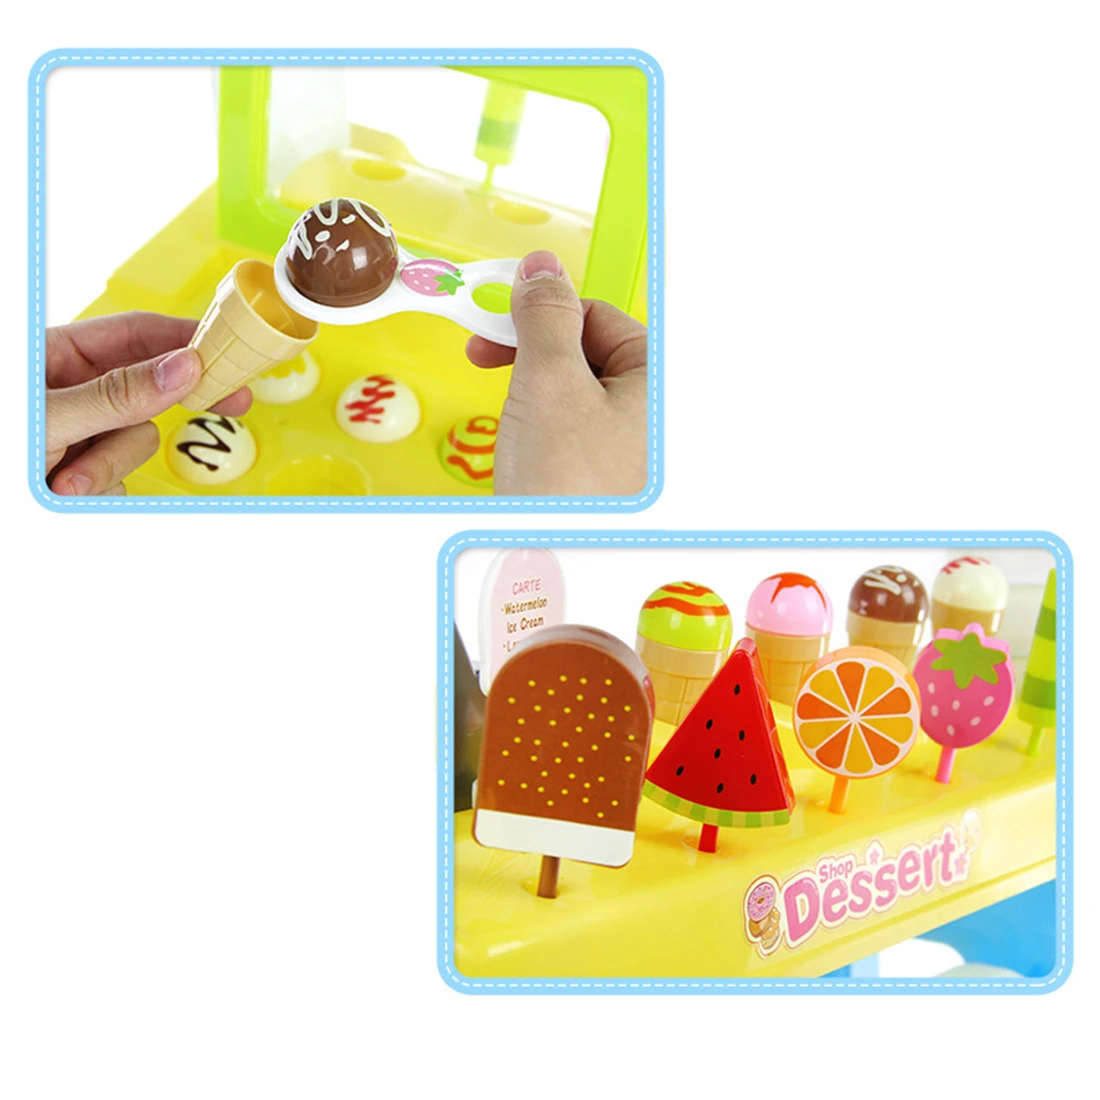 47 шт./компл. Дети моделирование супер Рынок Playset мульти-функциональный Рынок стойло кассовый аппарат игрушка в подарок на день рождения-розовый/желтый